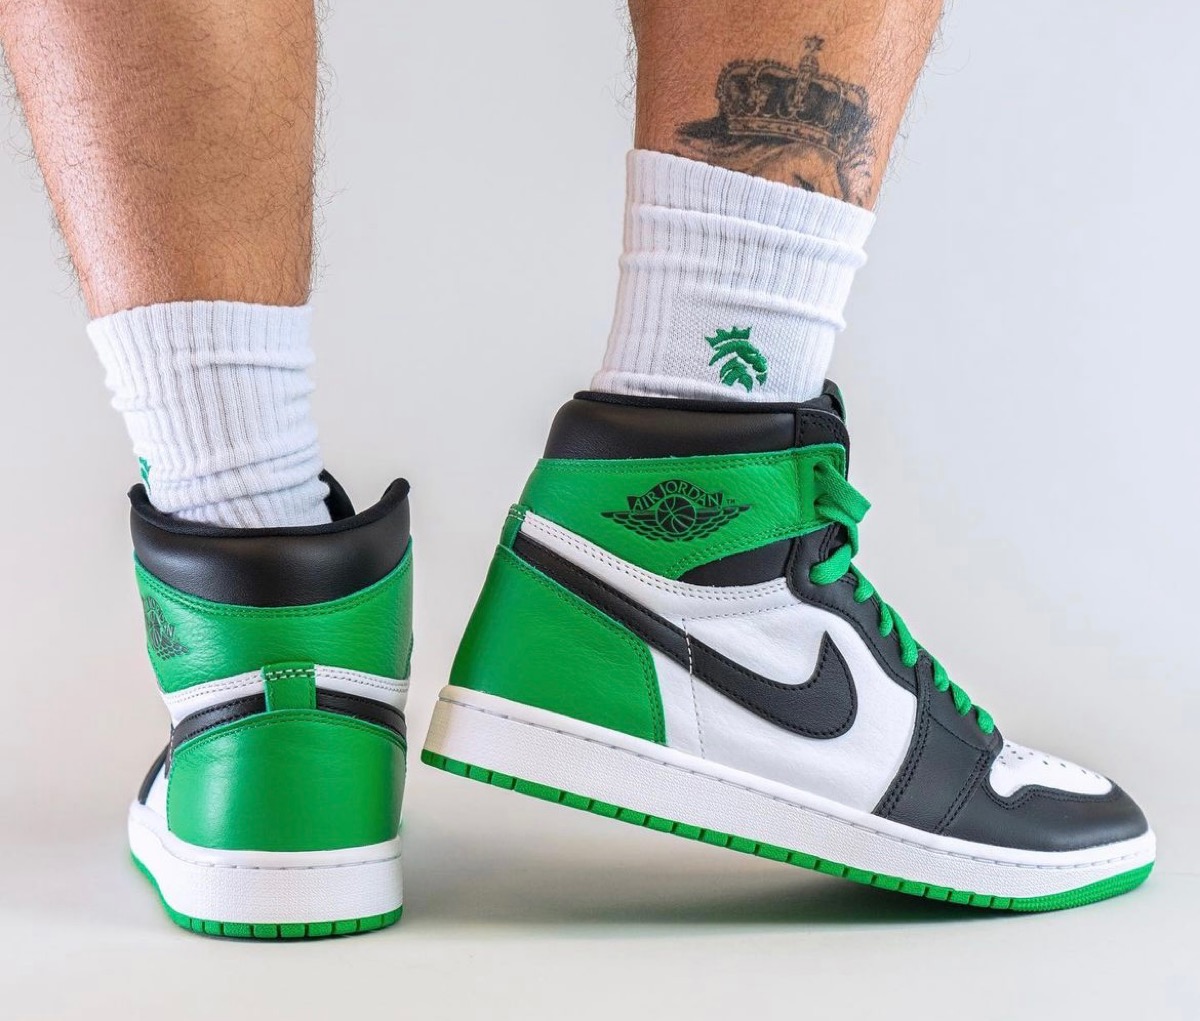 CelticsカラーのNike Air Jordan 1 Retro High OG “Lucky Green”が国内